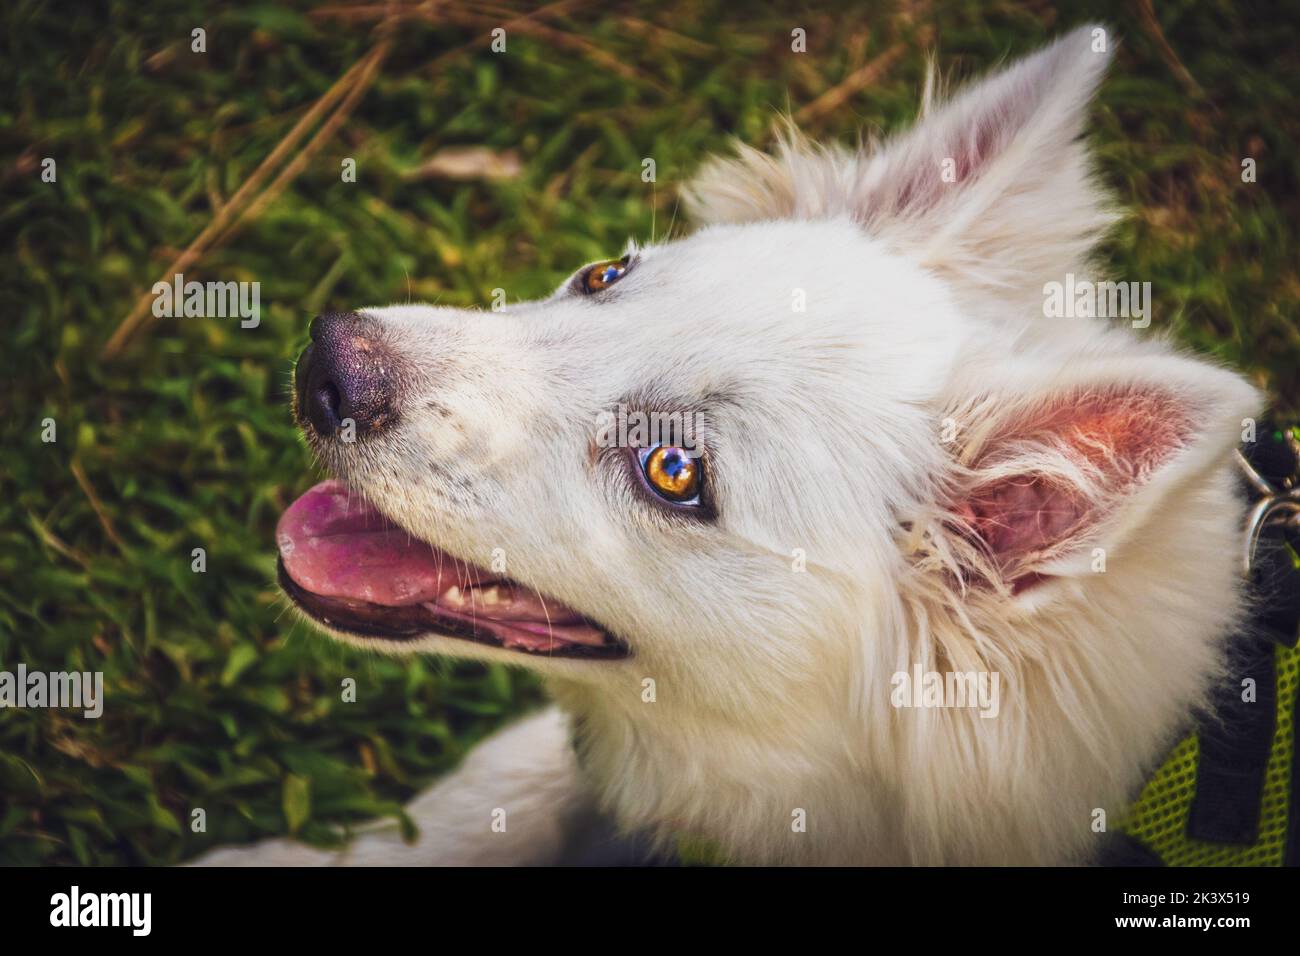 Pupe blanche douce aux yeux brillants avec des oreilles perky - Portrait de visage avec fond d'herbe floue - chien esquimau américain de quatre mois Banque D'Images